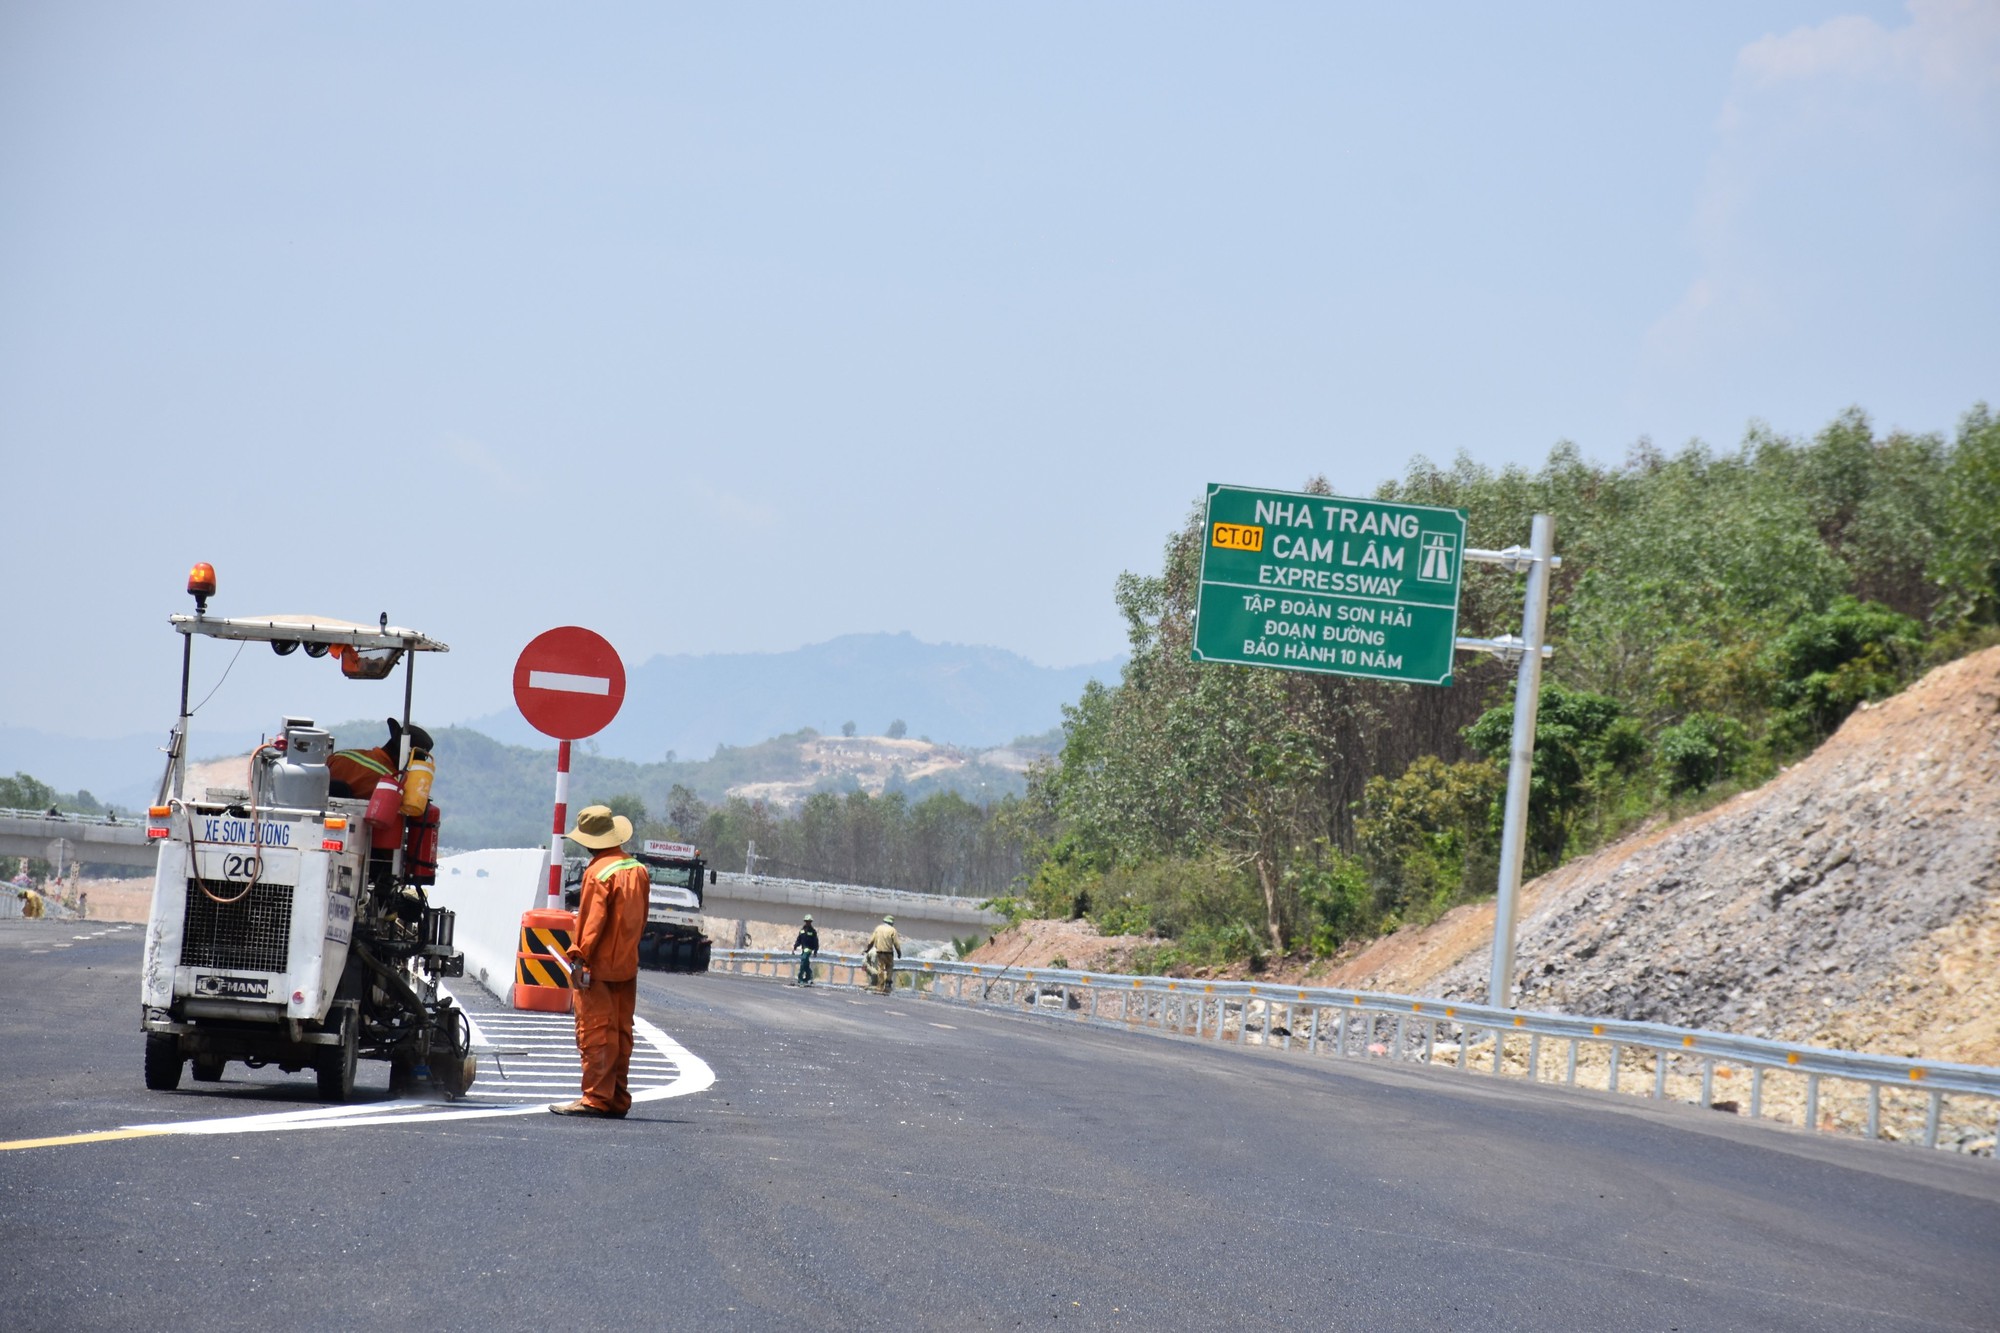 Tạm dừng lưu thông cao tốc Nha Trang – Cam Lâm để làm lễ khánh thành - Ảnh 1.